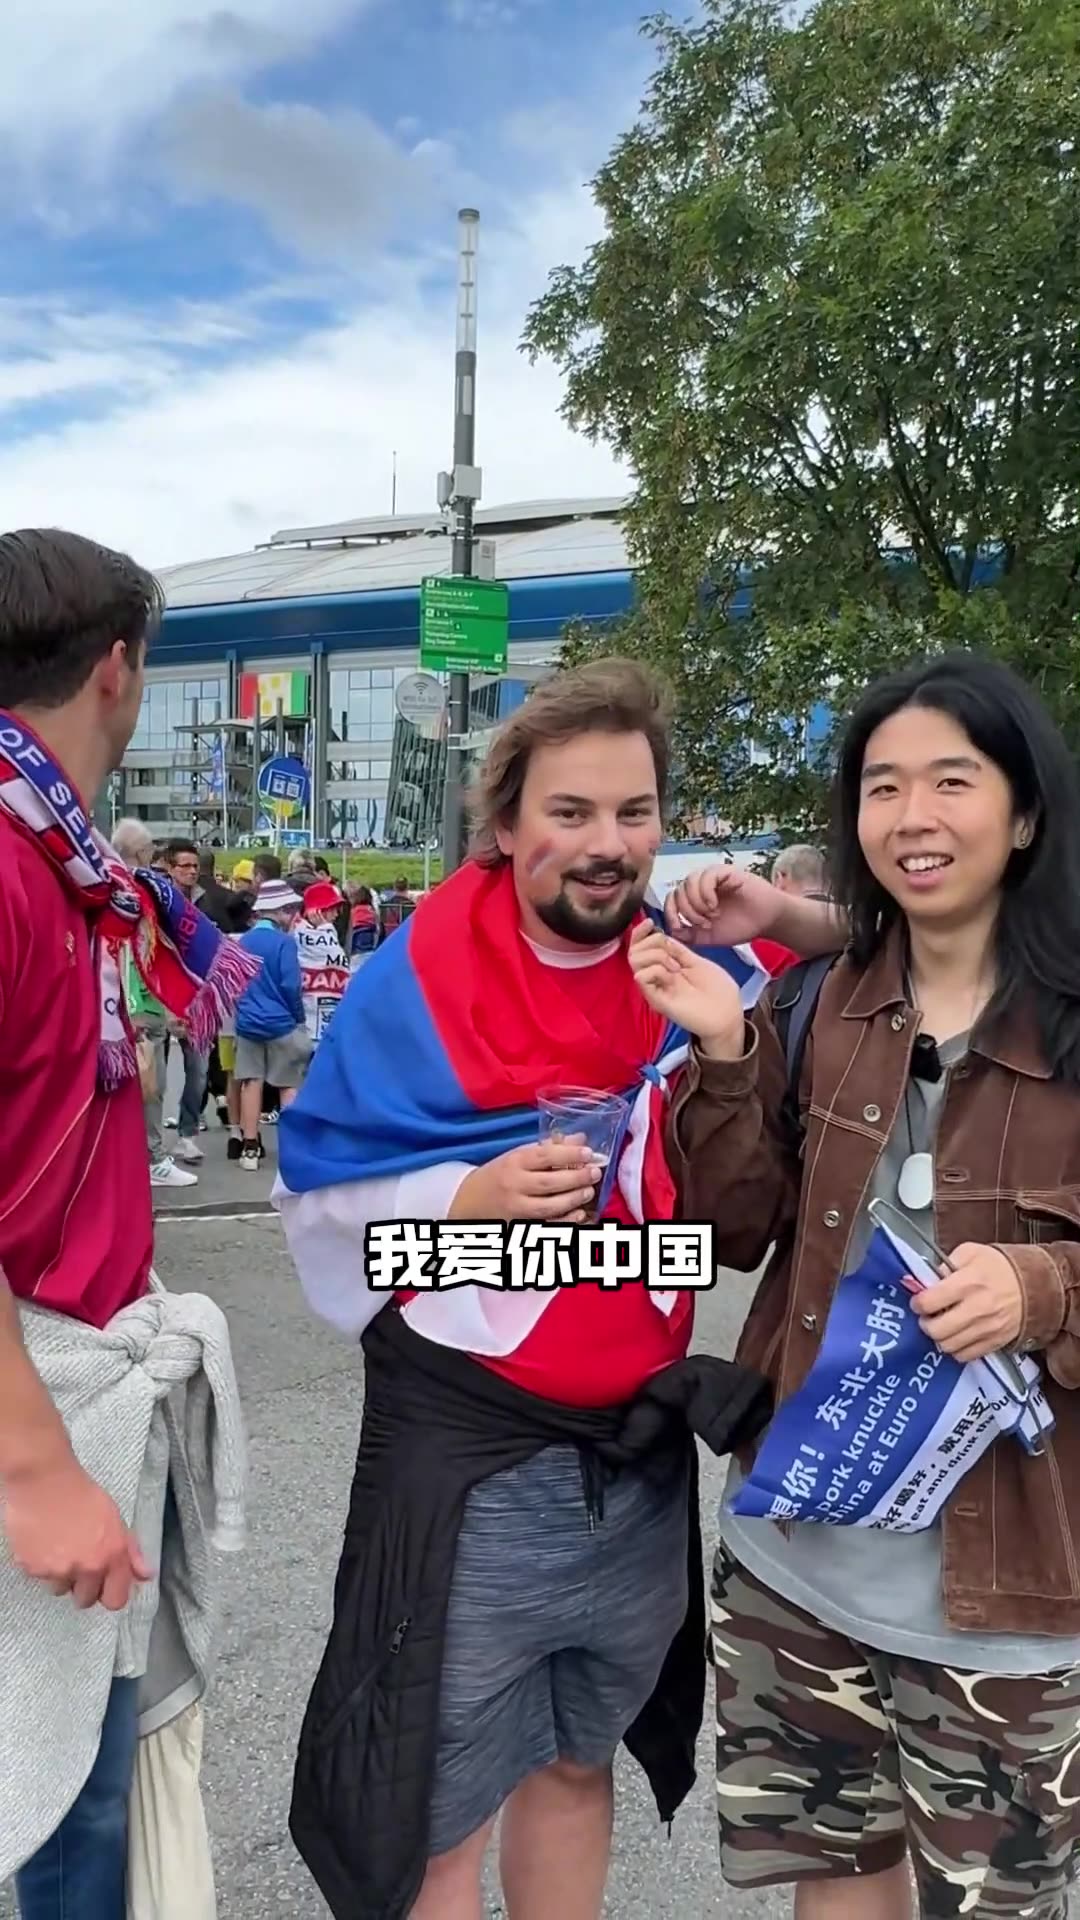 塞尔维亚球迷在欧洲杯赛场外唱《我爱你中国